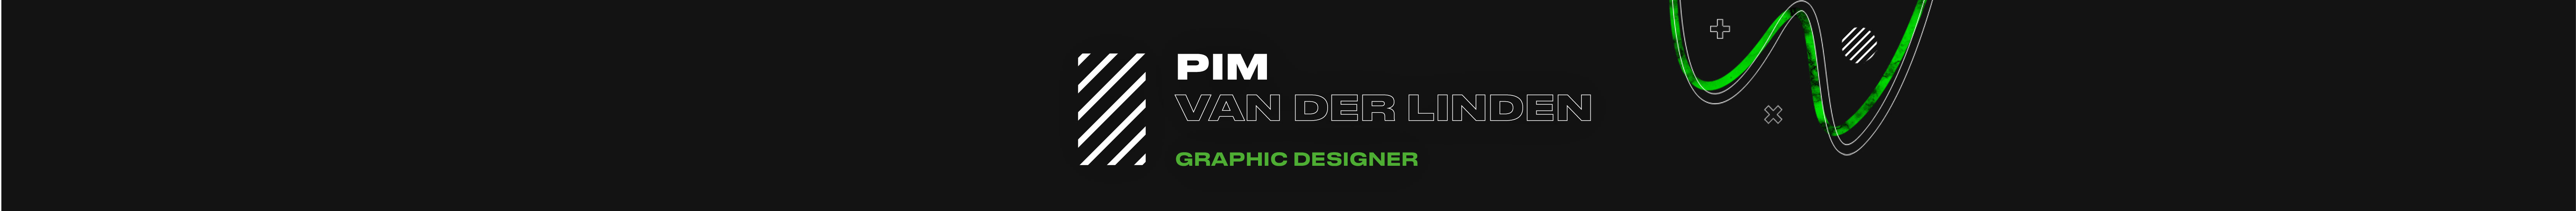 Pim van der Linden's profile banner